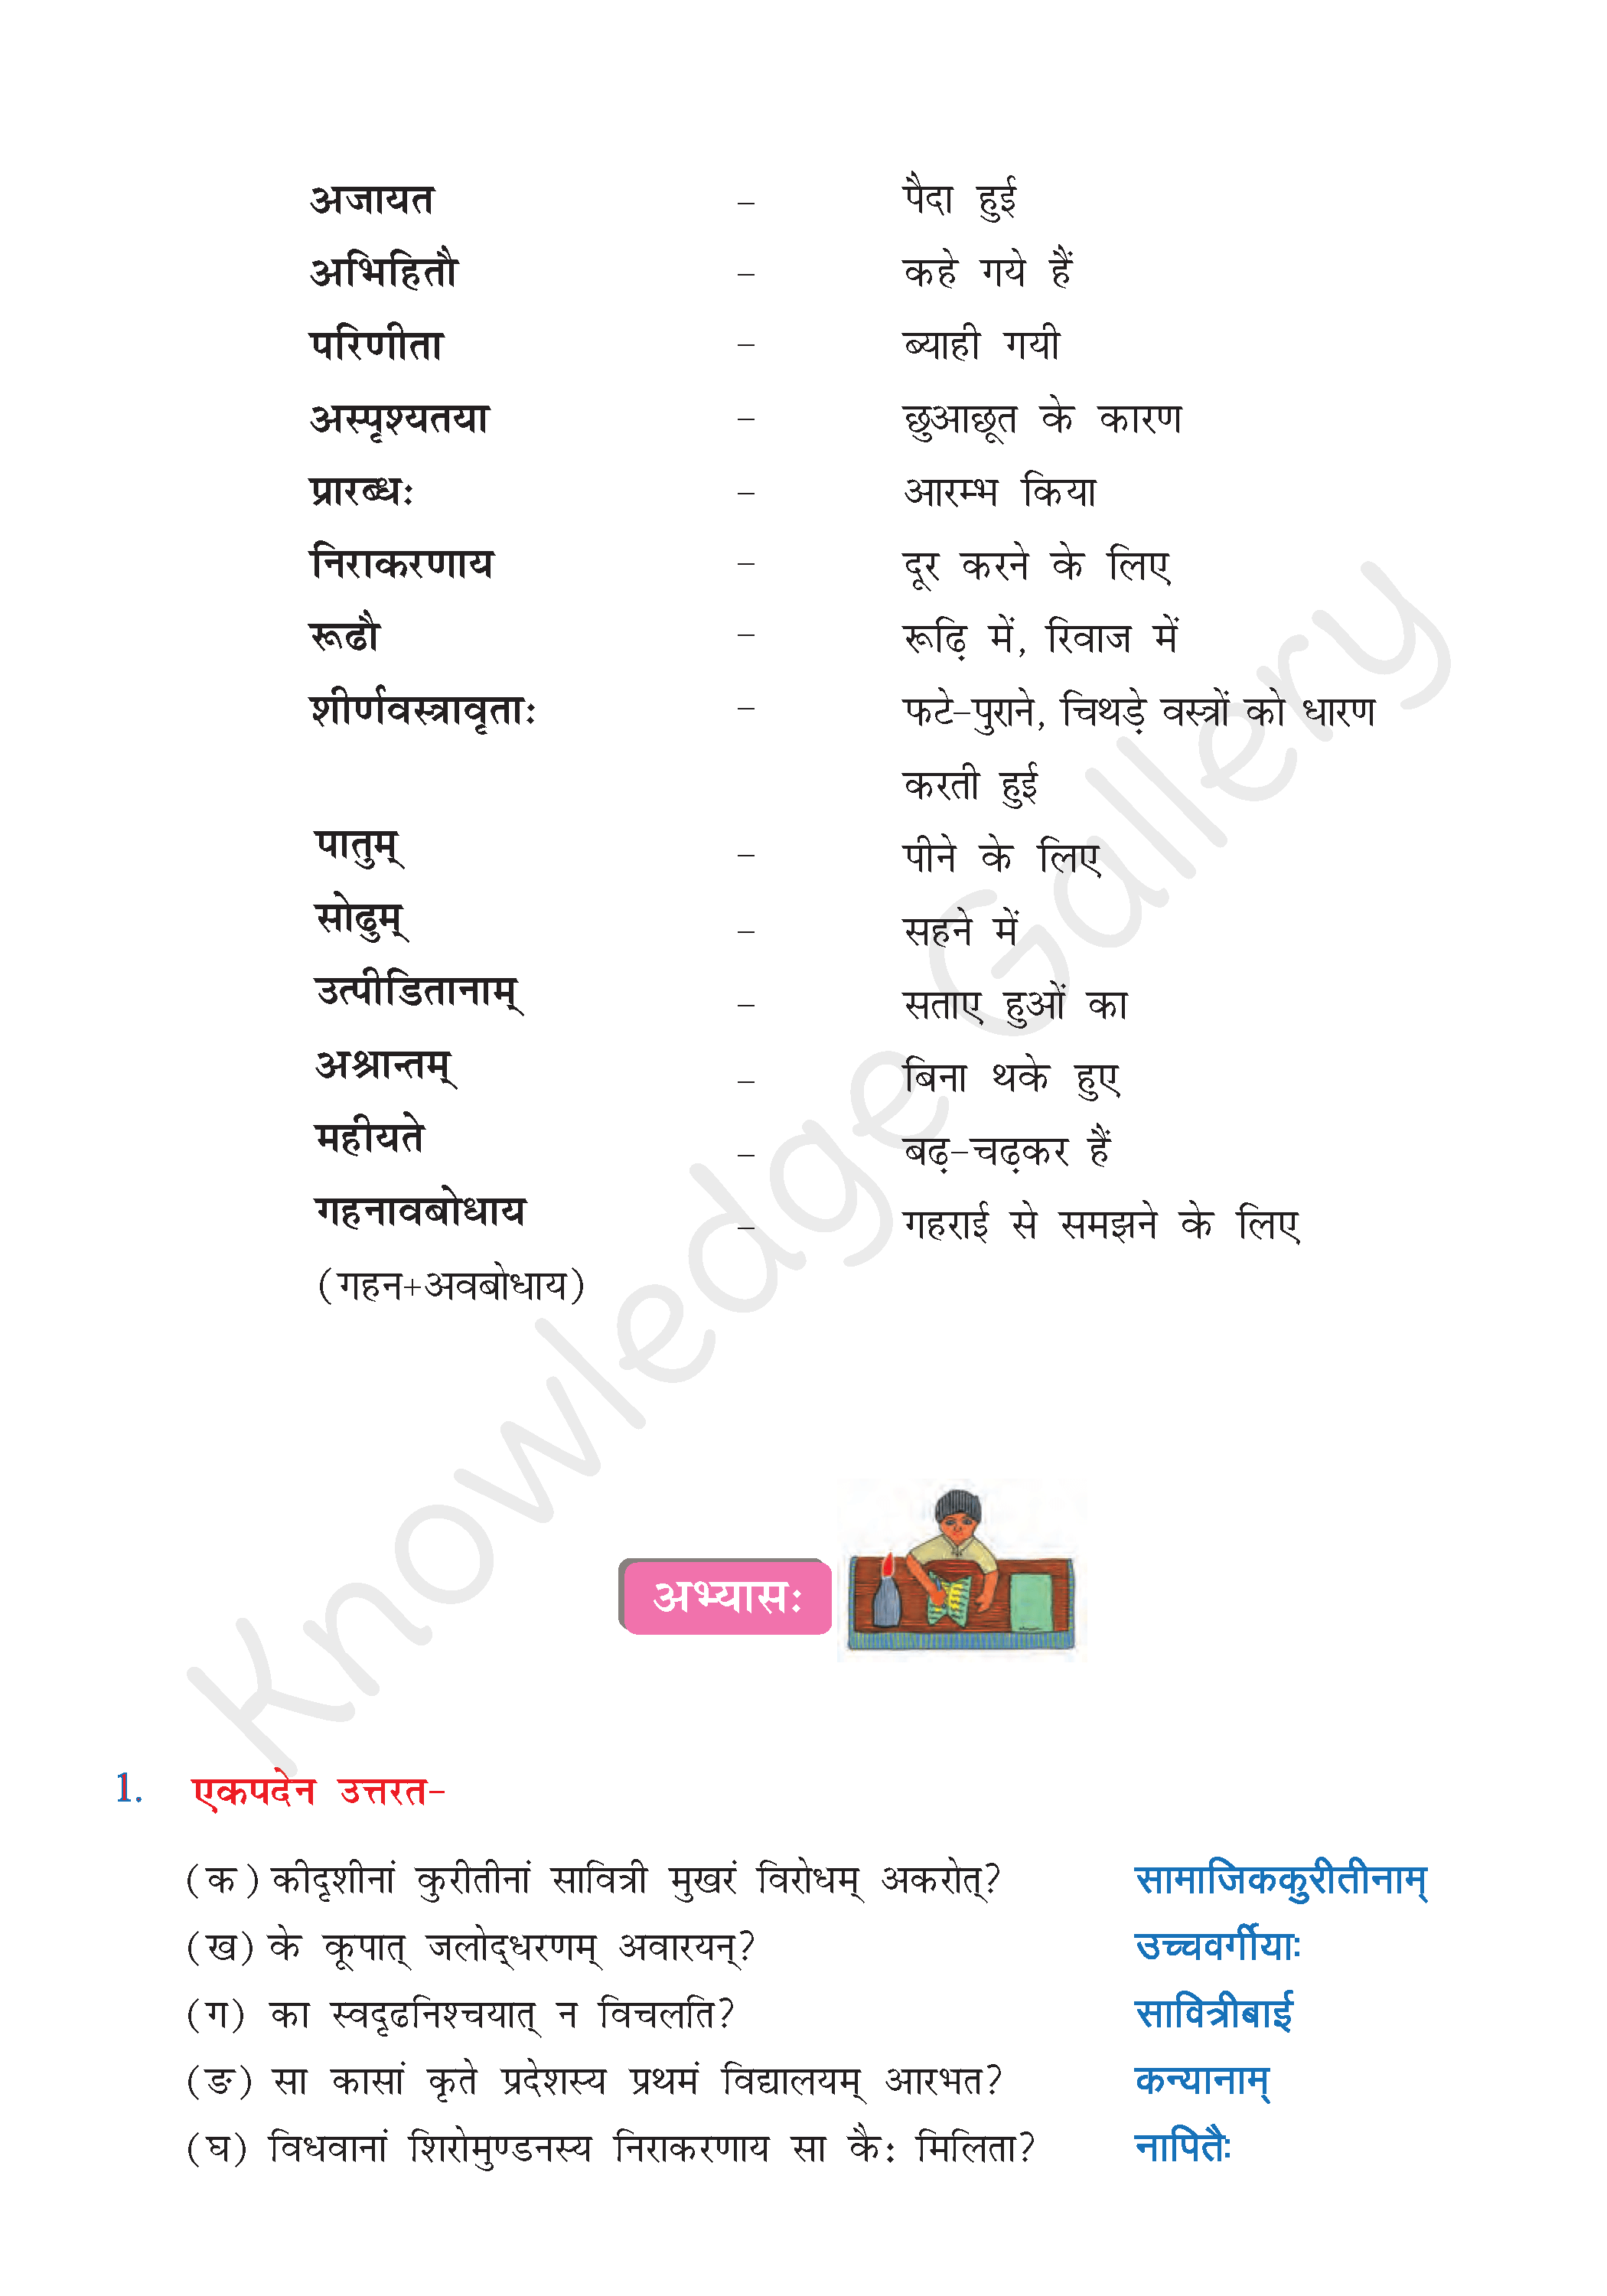 NCERT Solution For Class 8 Sanskrit Chapter 11 part 4